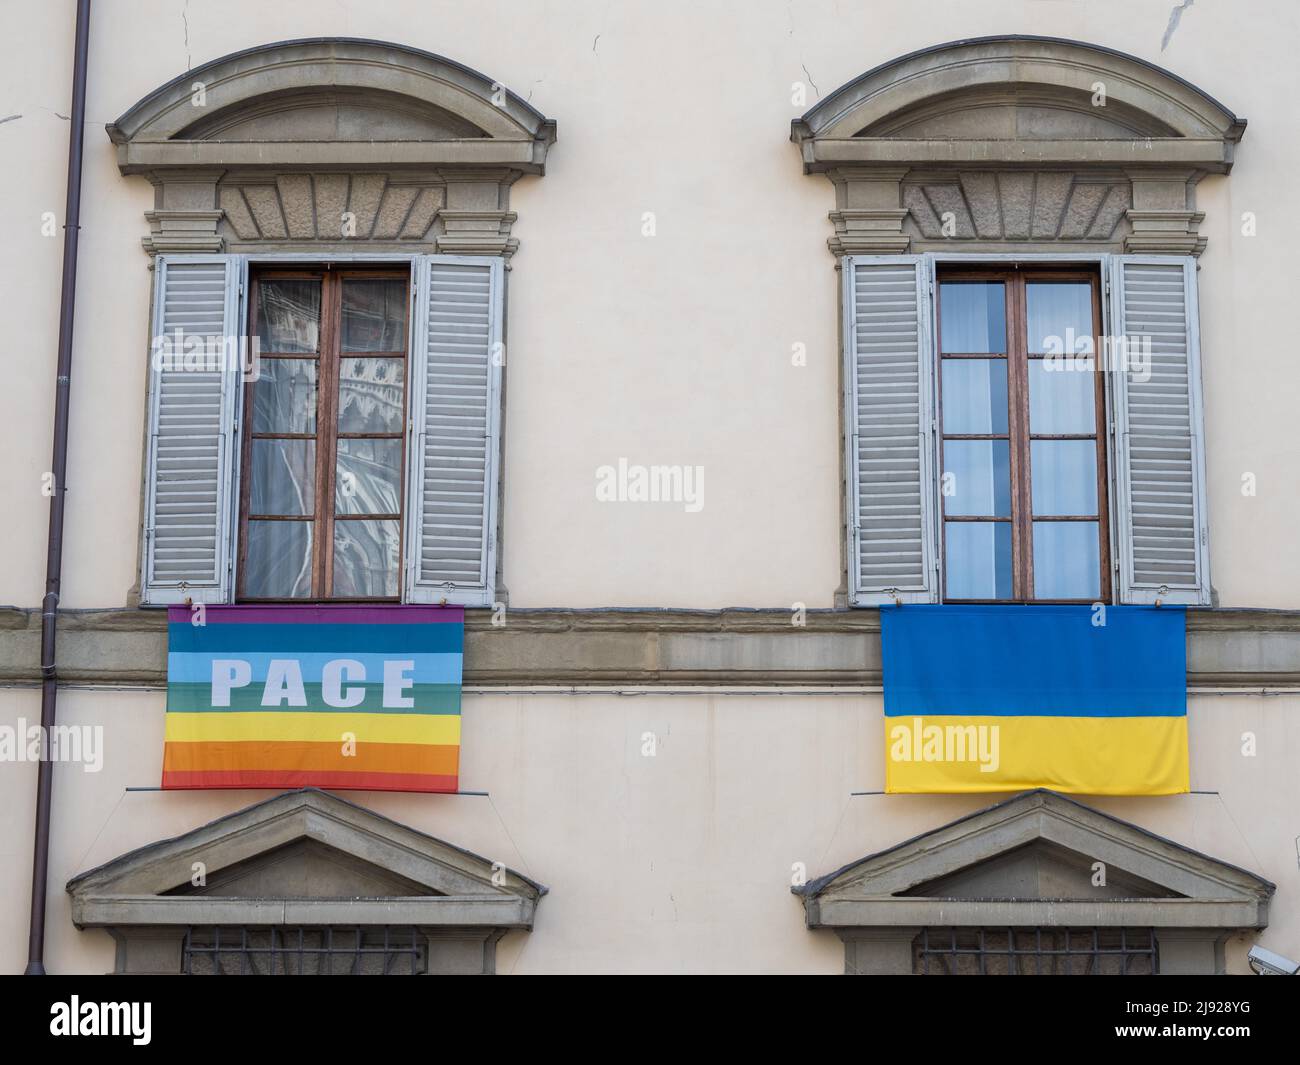 Ambassade de paix, façade avec drapeau de l'Ukraine et drapeau avec inscription Pace, Florence, Toscane, Italie Banque D'Images